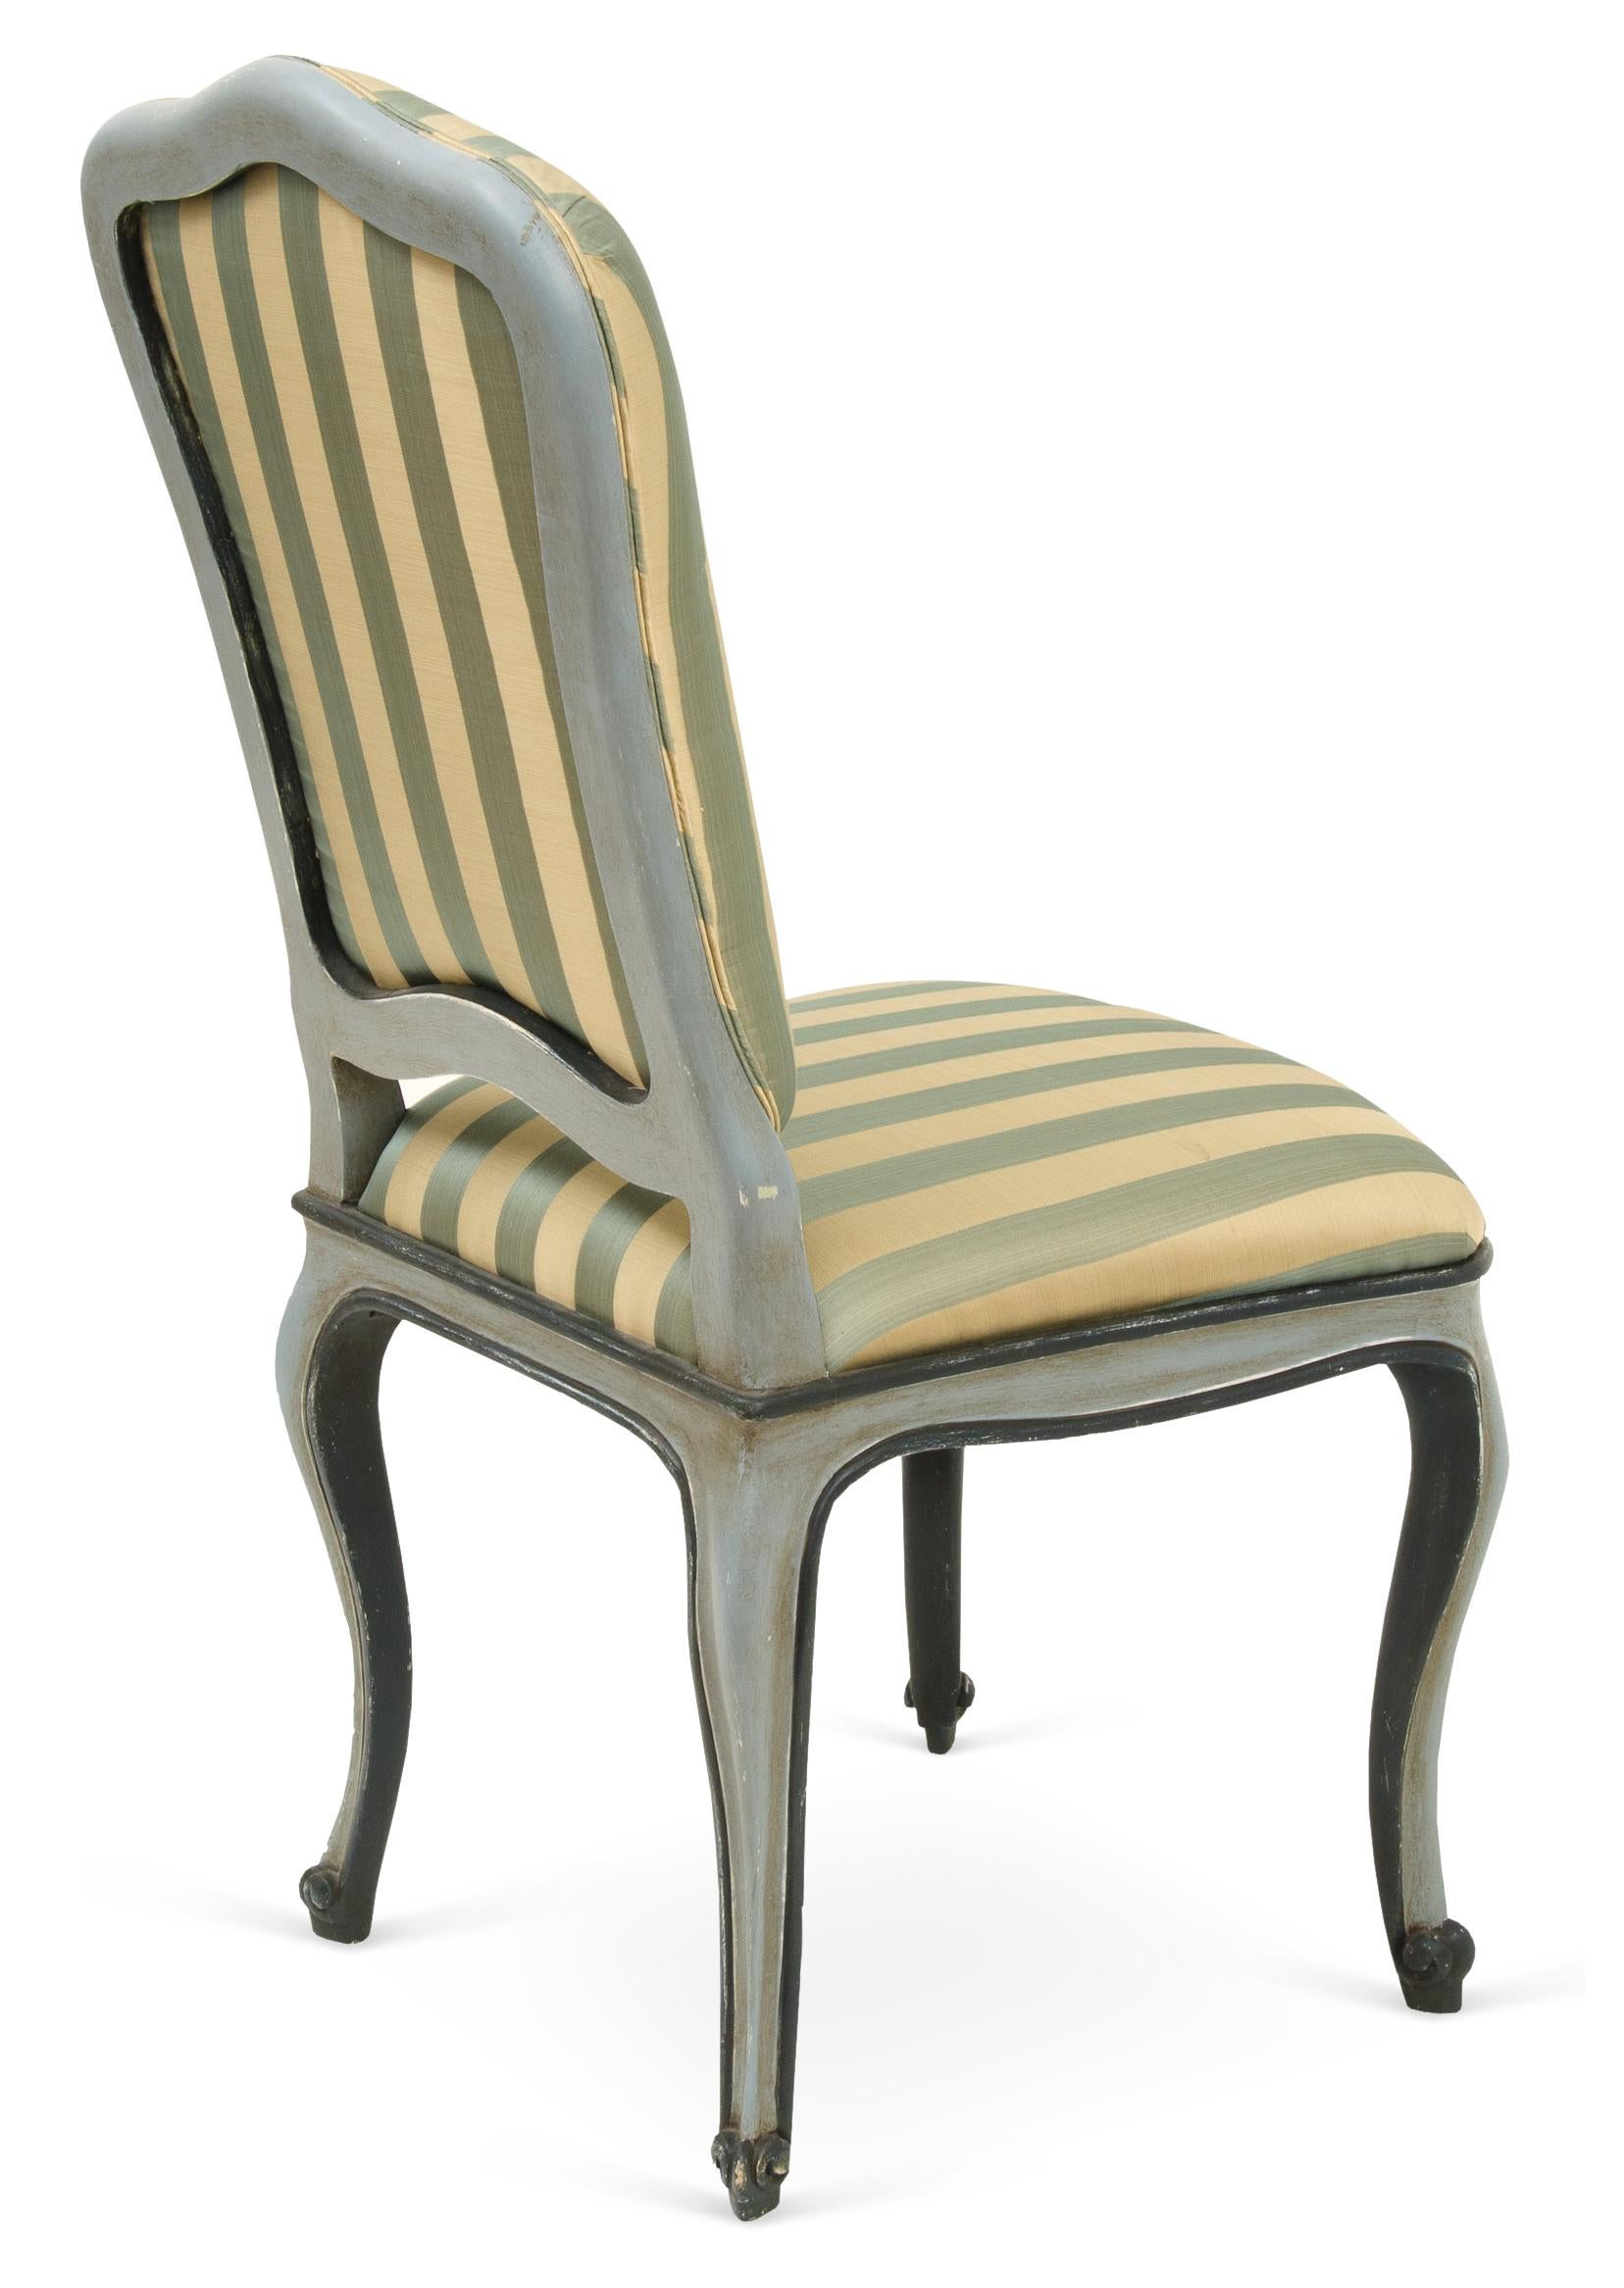 Cette reproduction d'une chaise vénitienne ancienne est un modèle fabriqué à la main avec une menuiserie traditionnelle, une laque antique et une dorure Borghese sur les pieds cabriole sculptés à la main. Tailles et finitions personnalisées